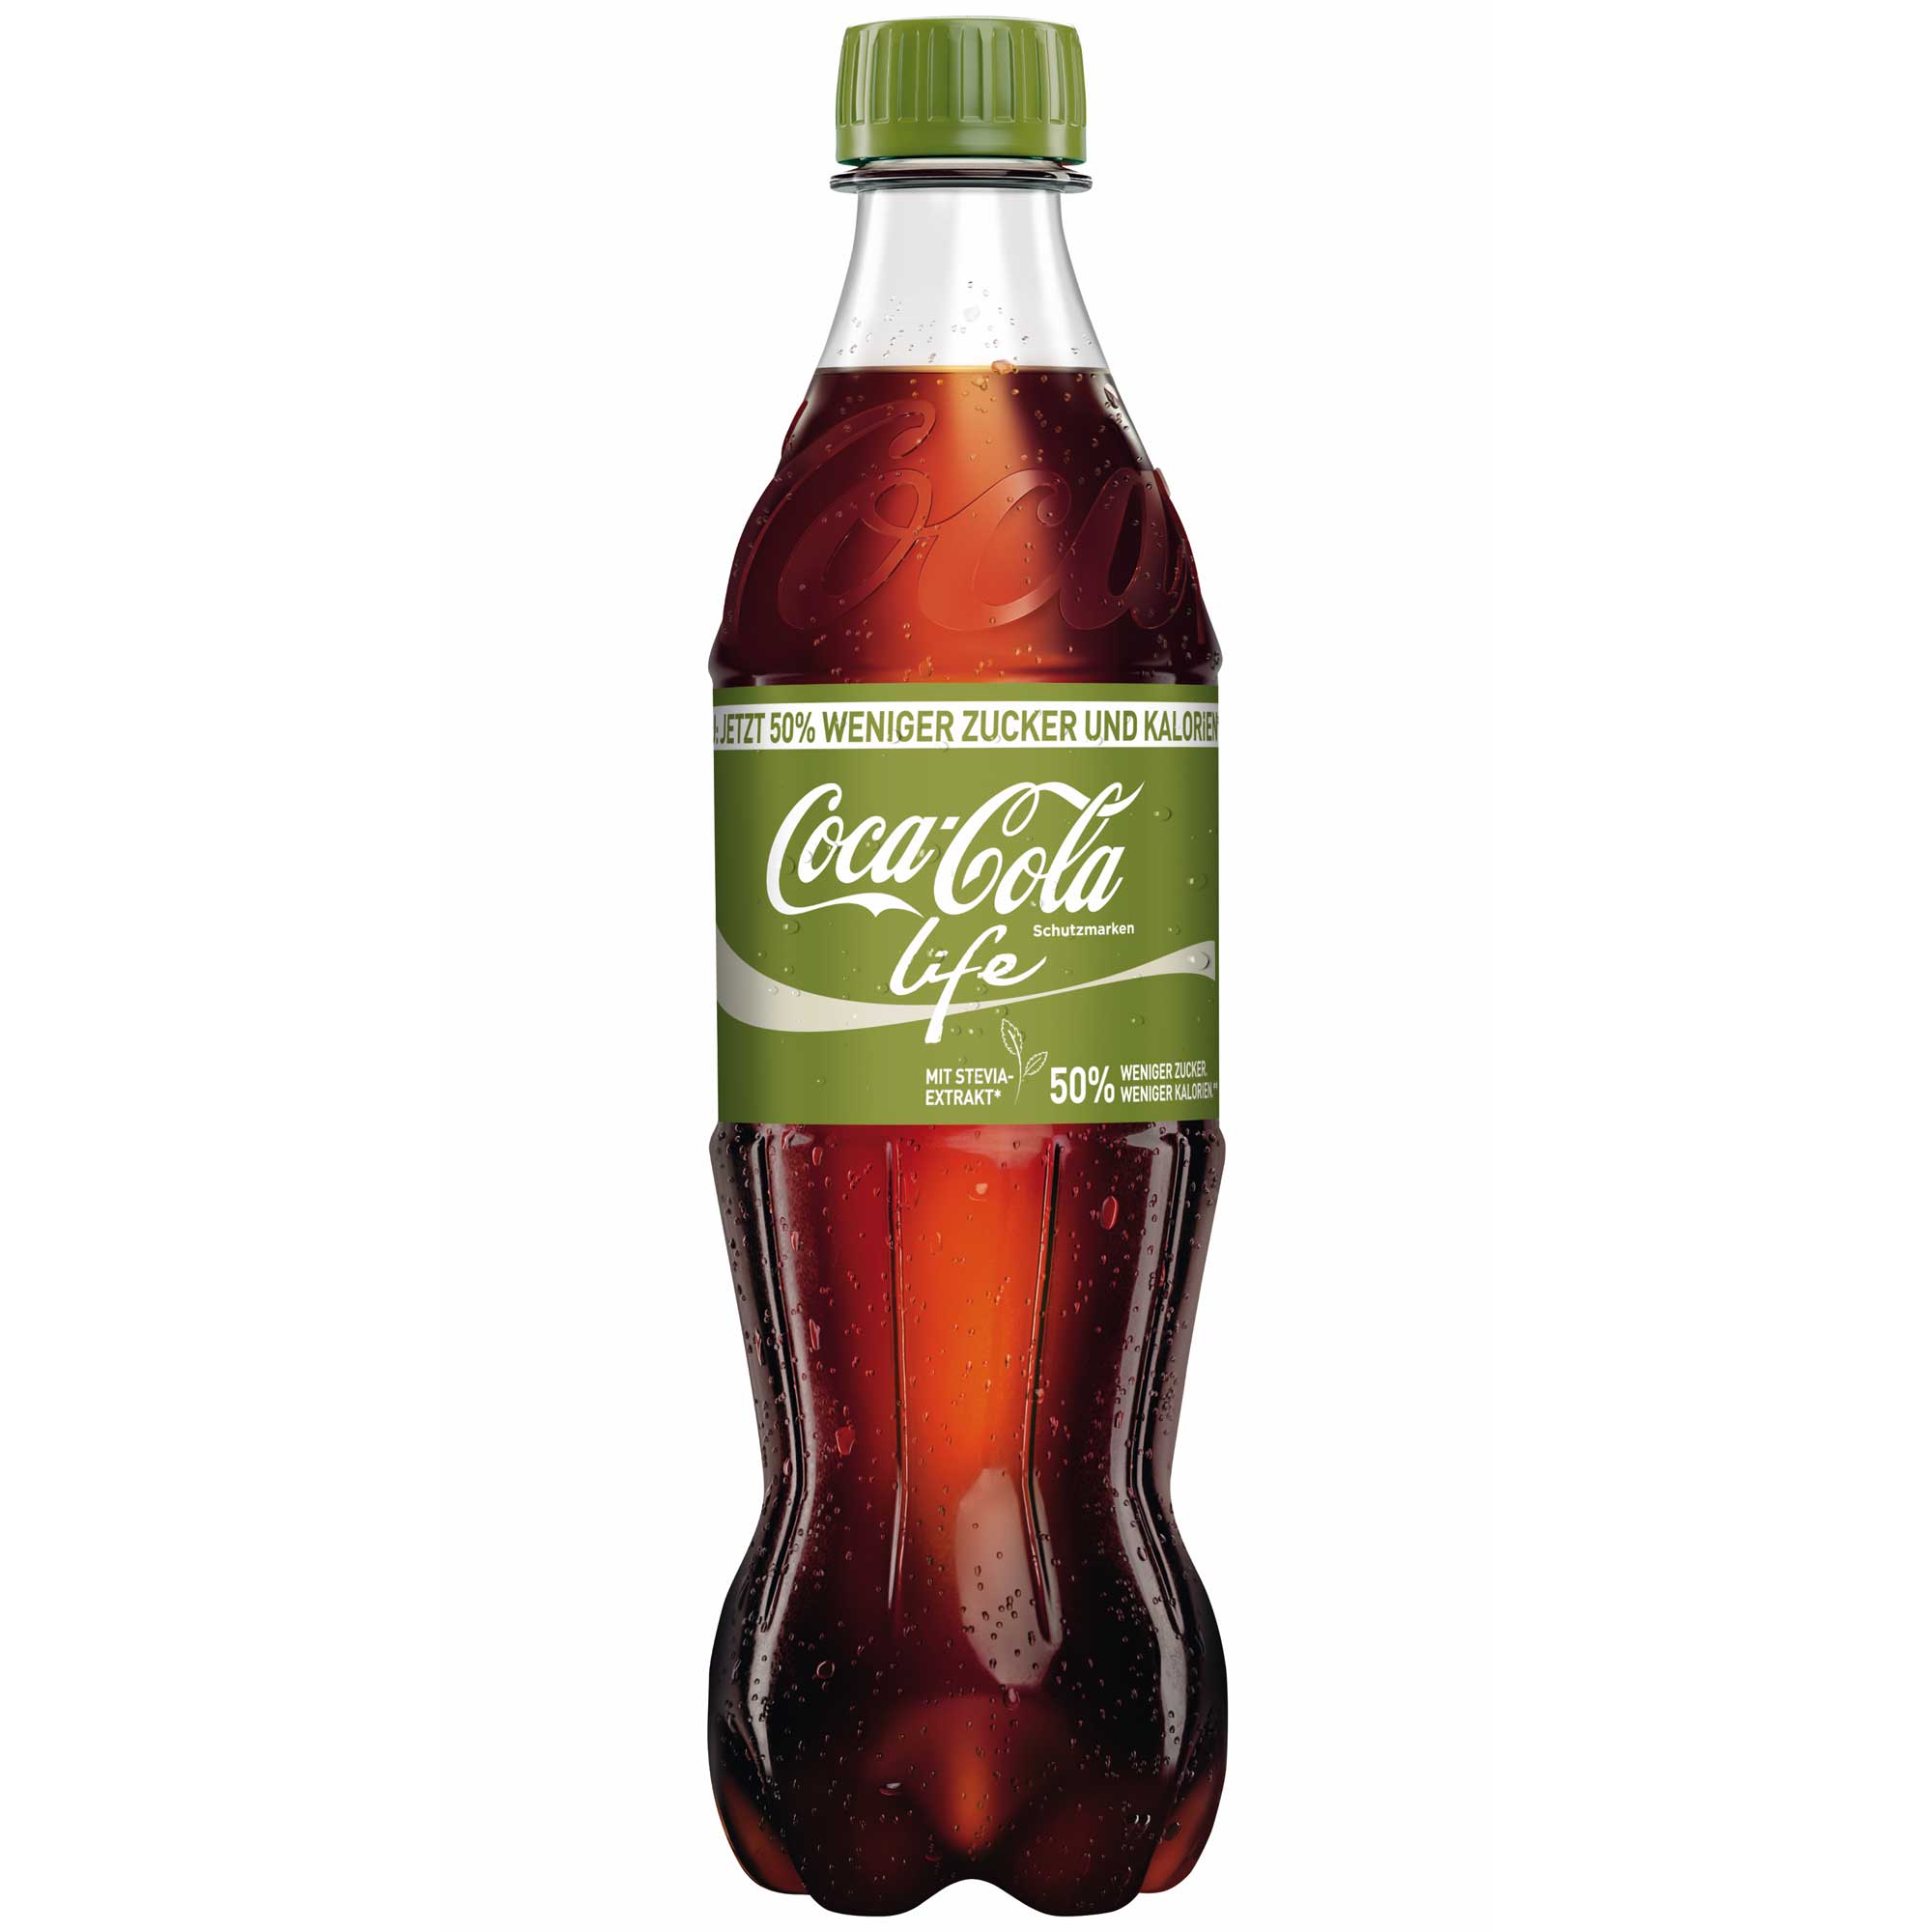 Was Ist Coca Cola Life